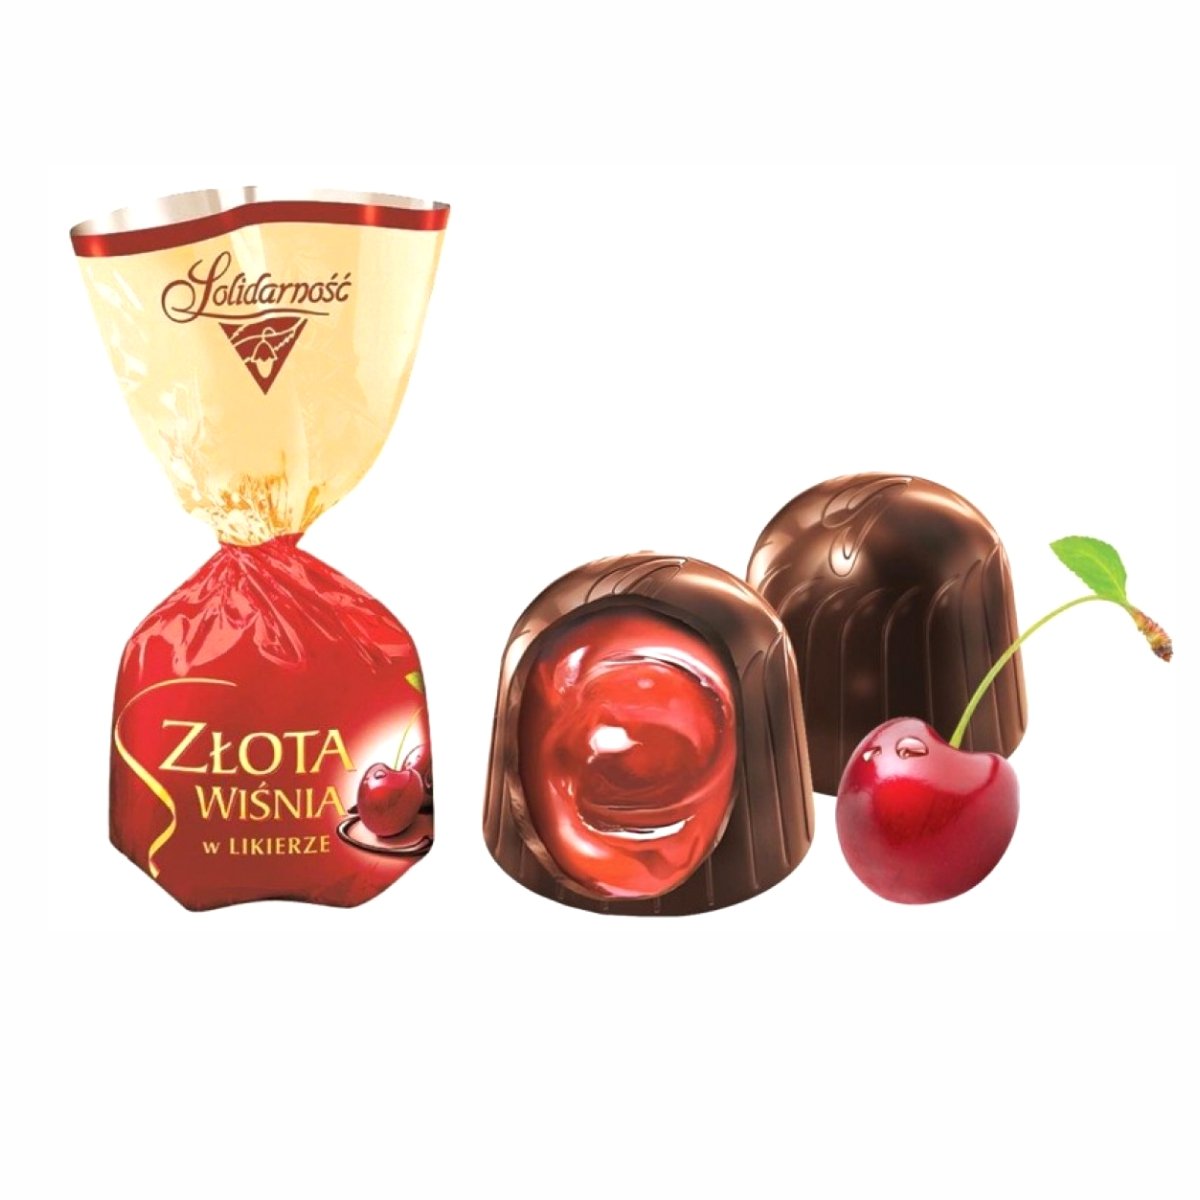 Польские конфеты Mieszko польские